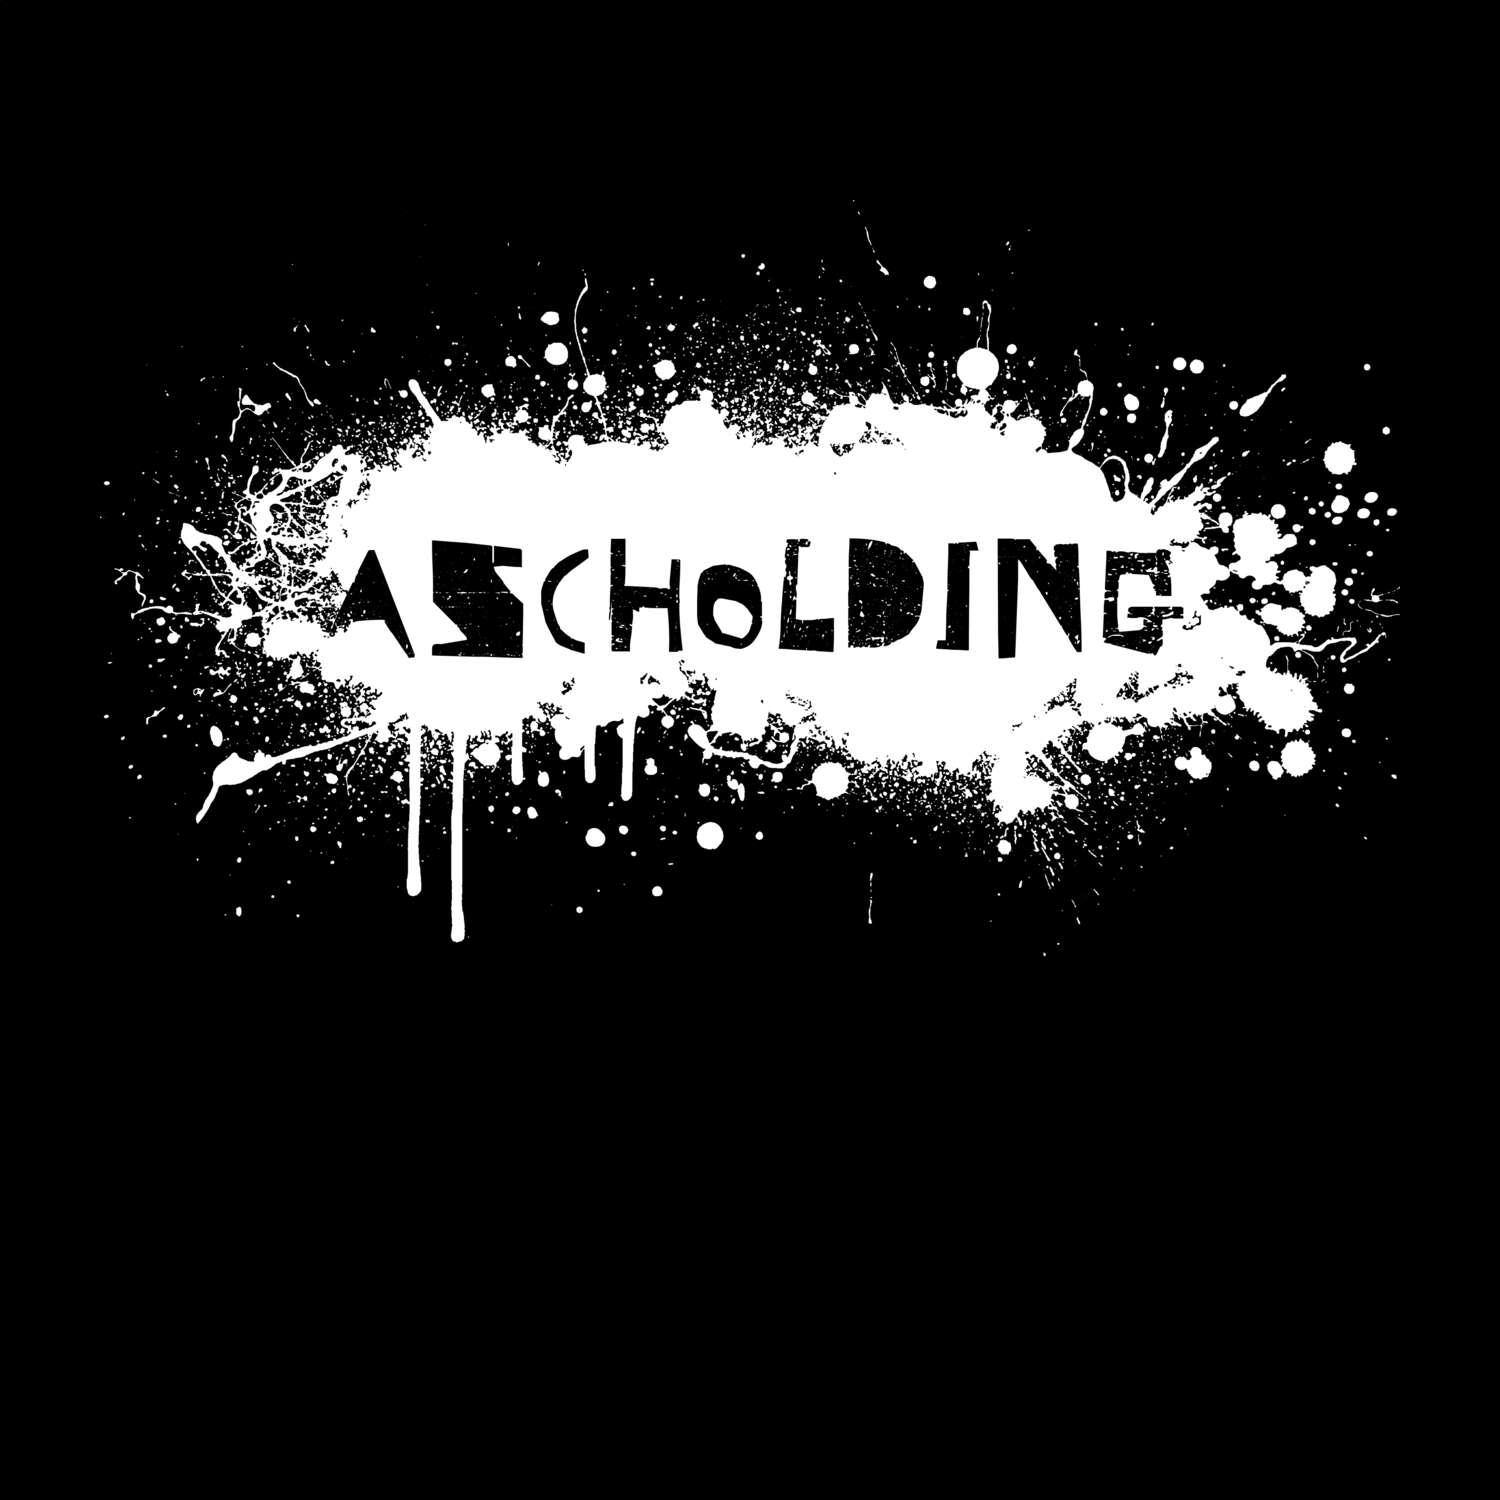 Ascholding T-Shirt »Paint Splash Punk«